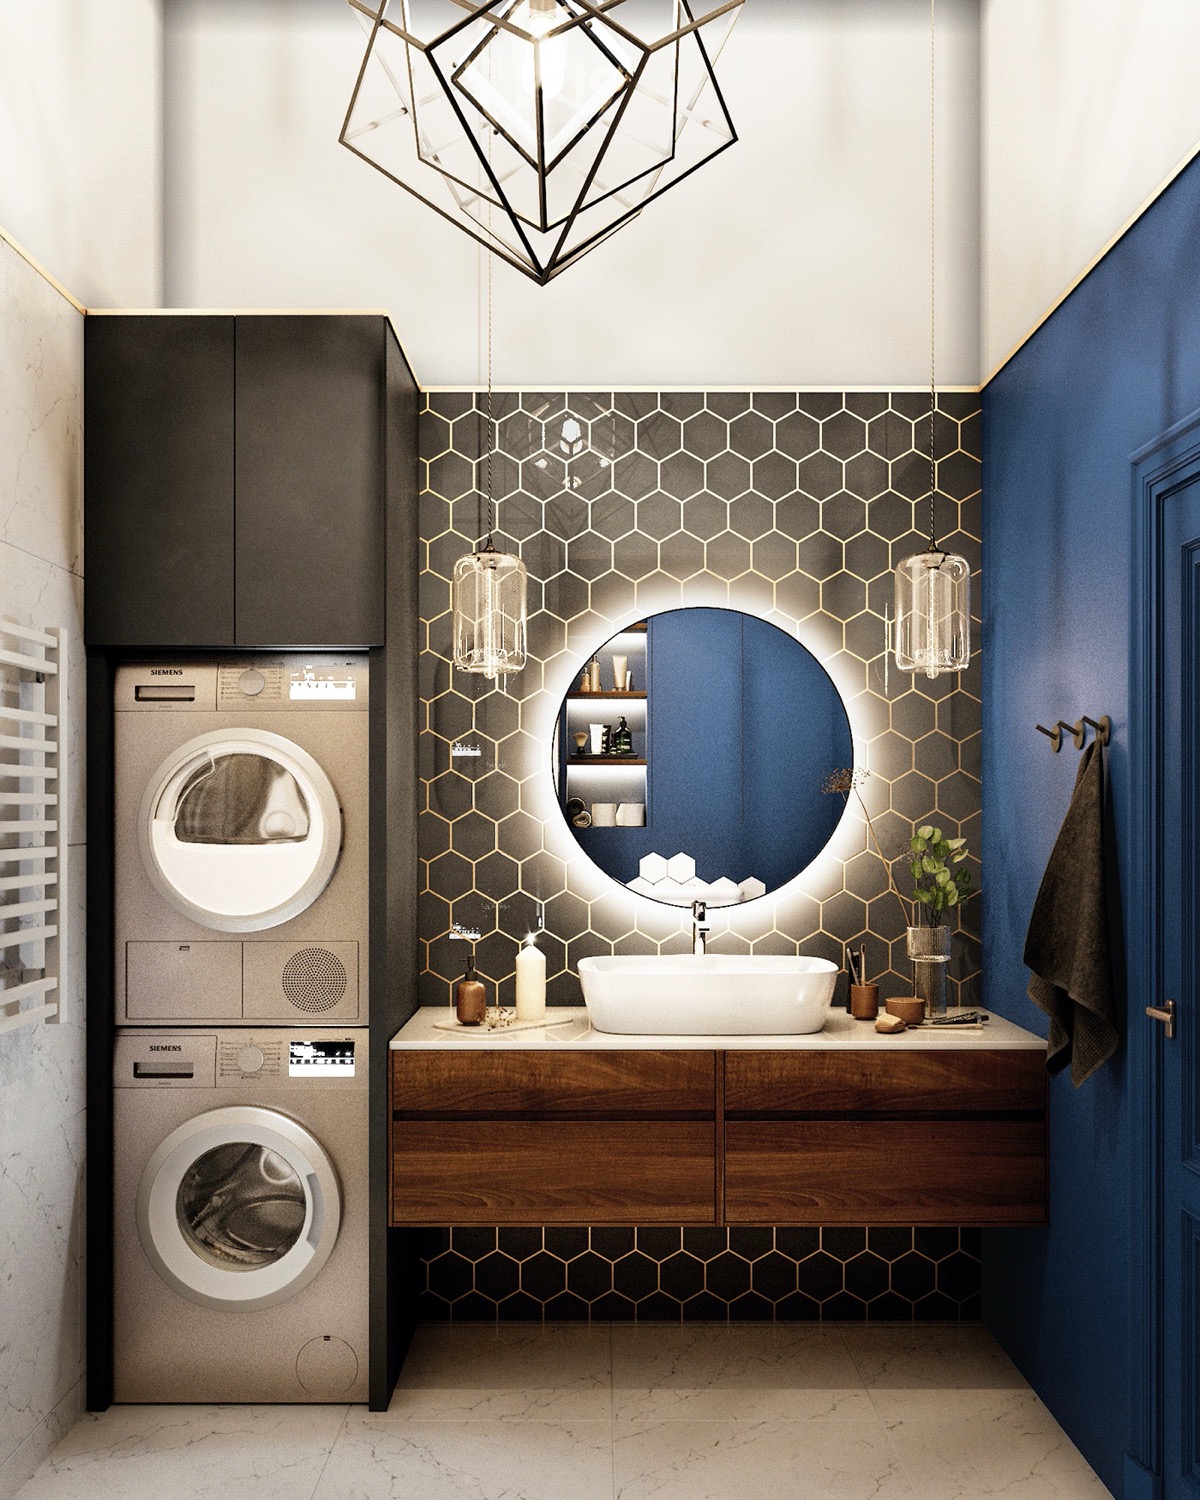 Phòng tắm ấn tượng với sơn màu xanh coban kết hợp gạch lục giác màu đen viền vàng